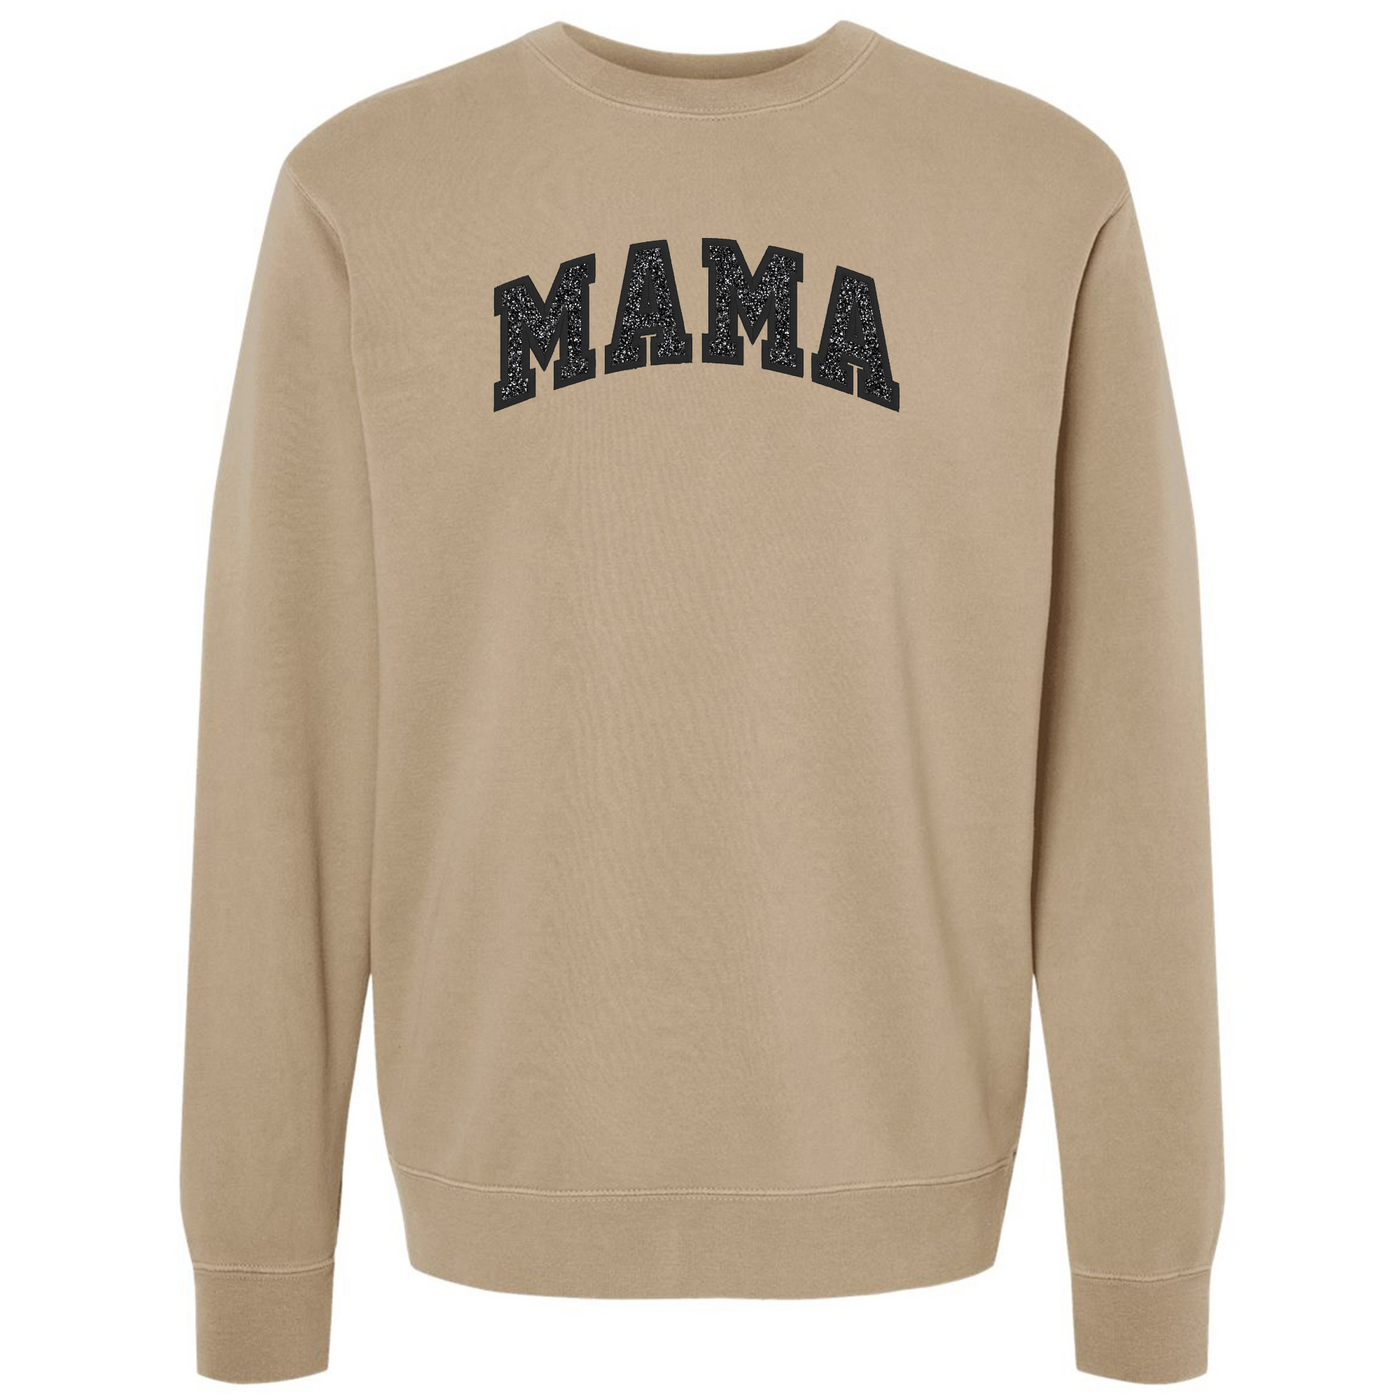 Glitter Embroidery ‘Mama’ Cozy Crew